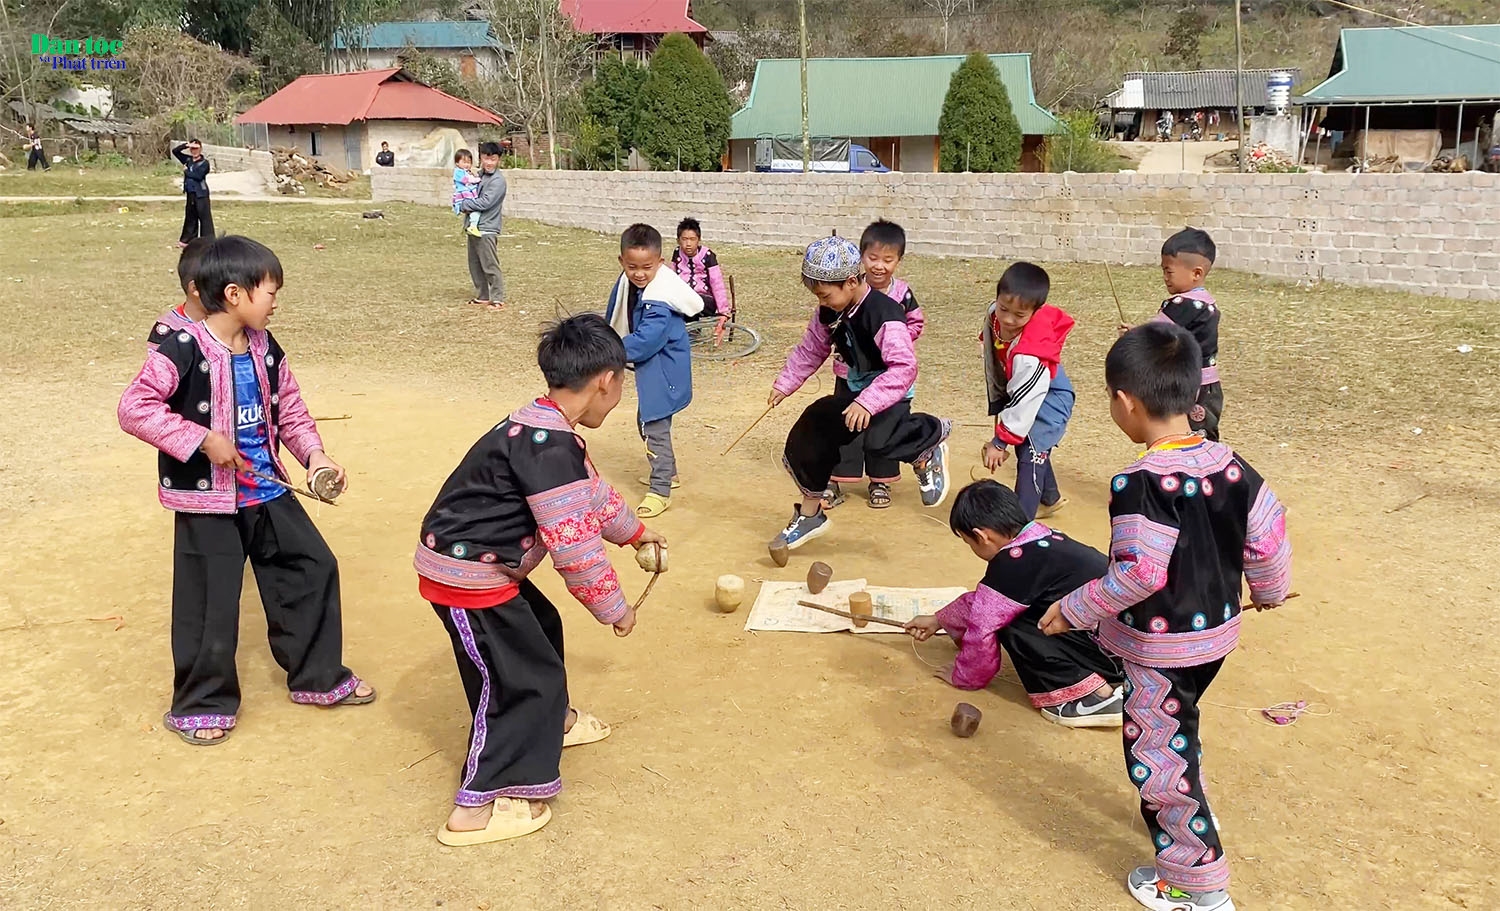 Đánh tù lu là trò chơi truyền thống trong các dịp lễ hội của người Mông, được các bé trai yêu thích.